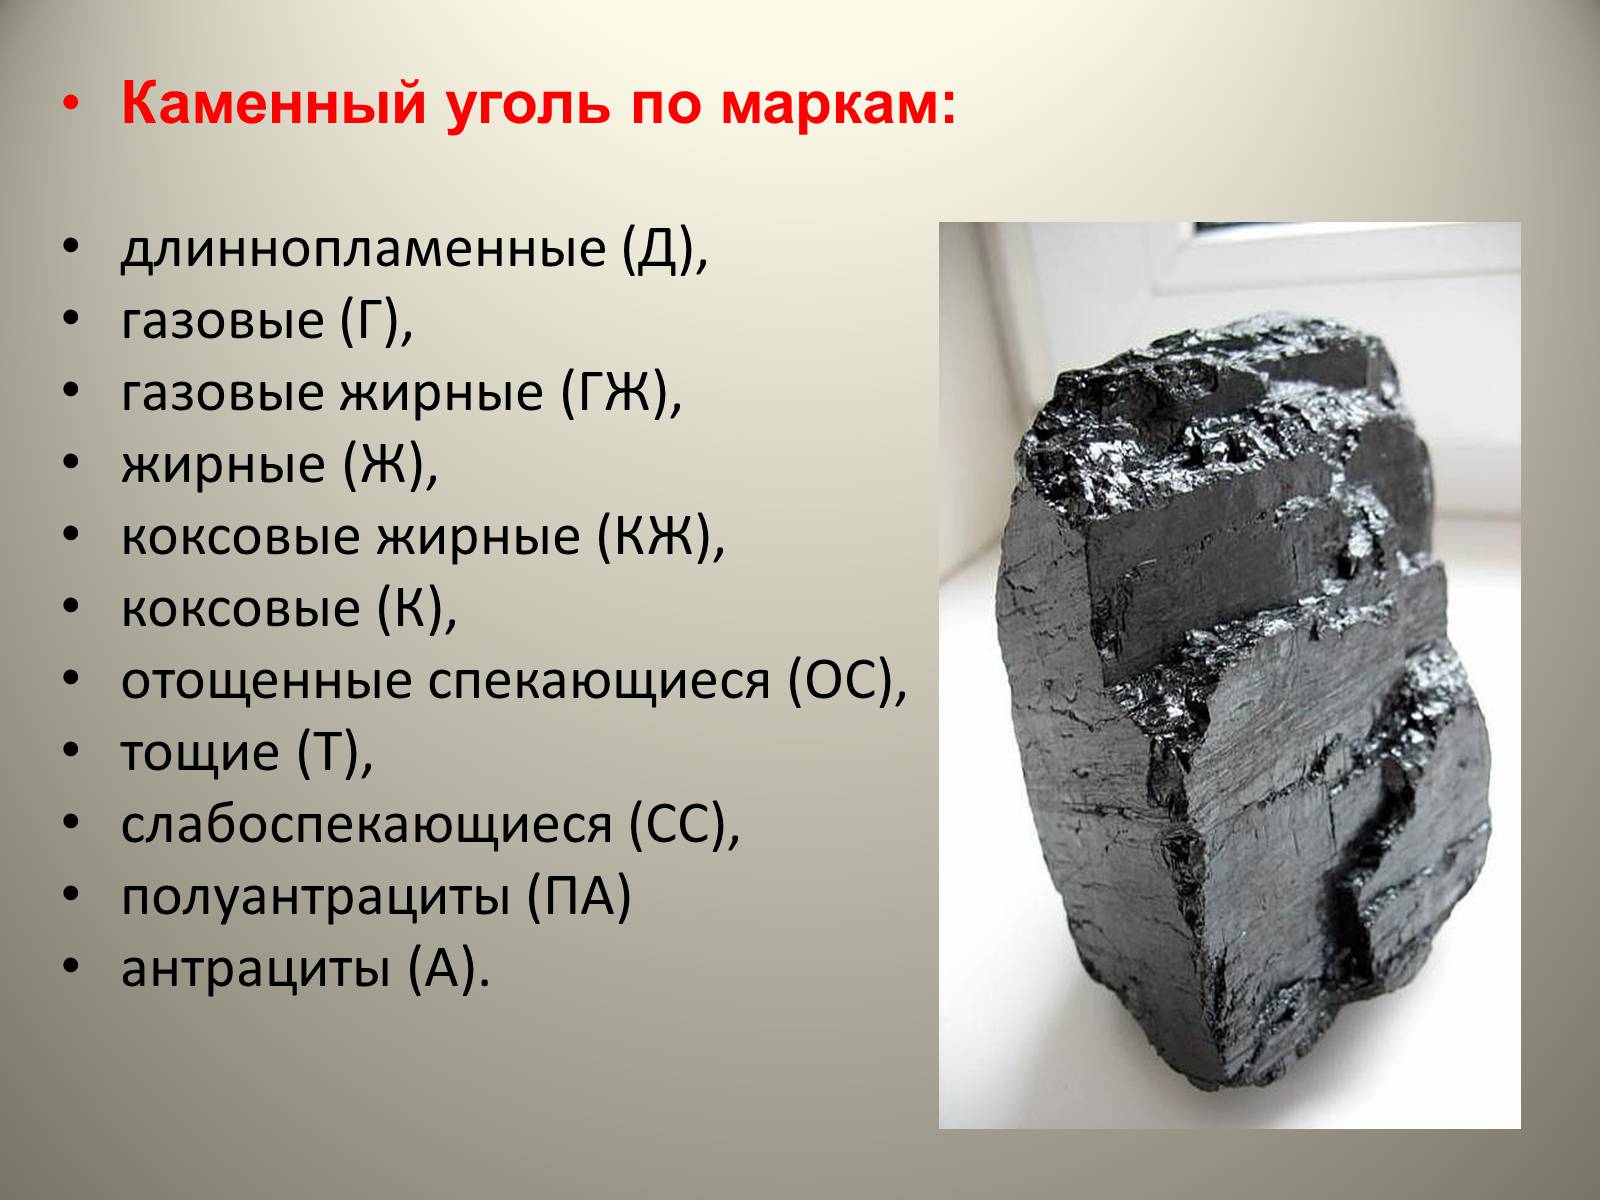 Каменный уголь интересно. Каменный уголь презентация. Уголь для презентации. Проект каменный уголь. Сведения о Каменном угле.